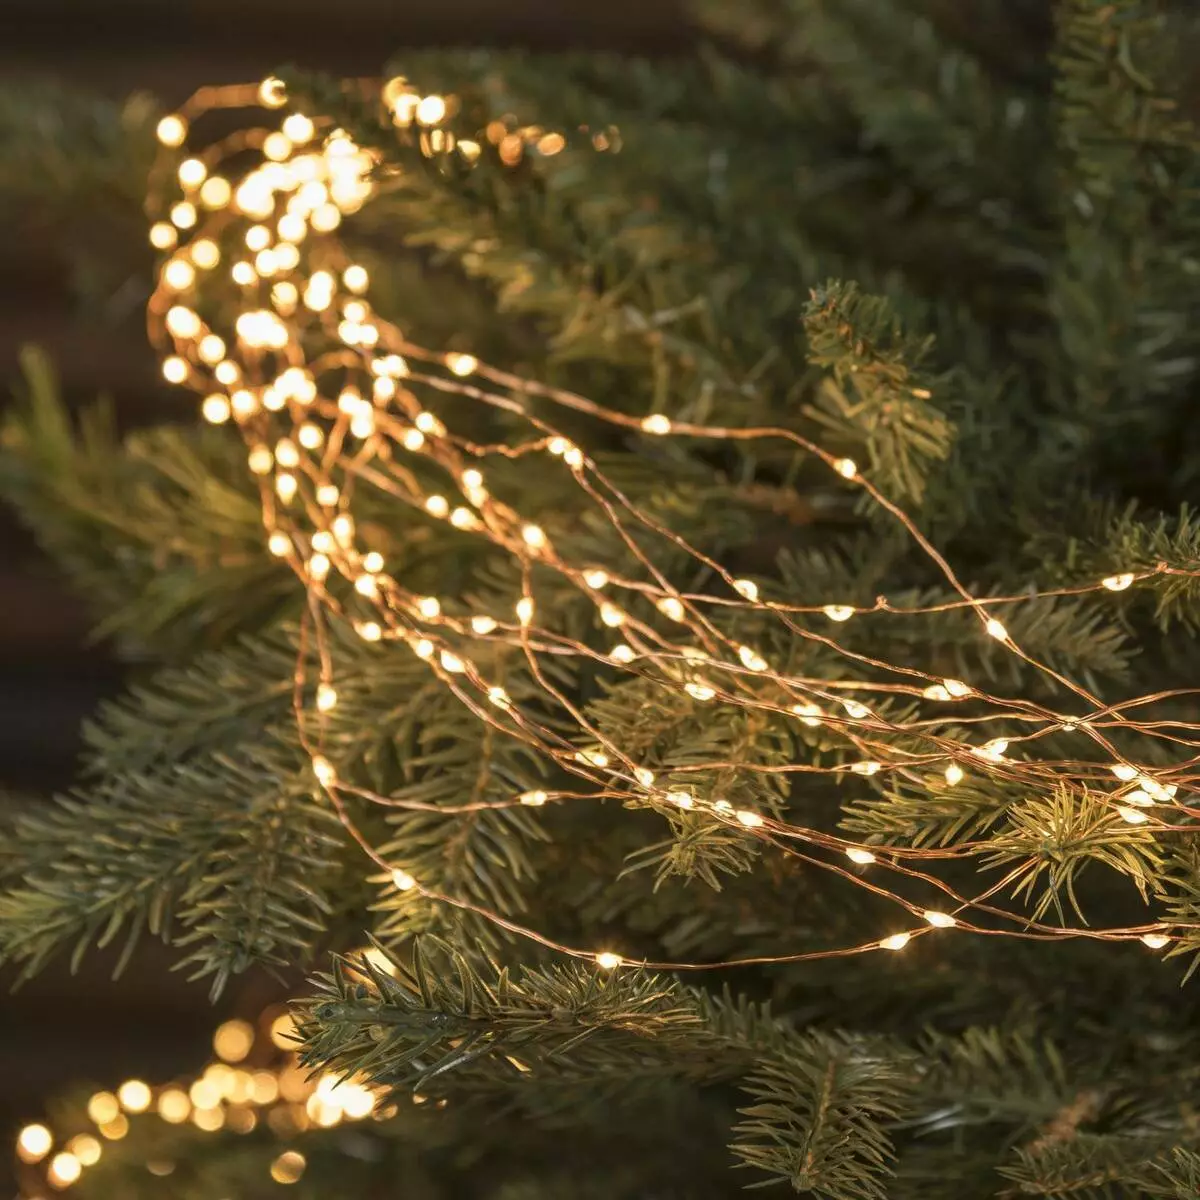 Ako zdobí vianočný strom s vencom? Ako správne a krásne obliekať to podľa schémy s žiariace elektrickej girlandami a ďalšie veniec? 7630_16